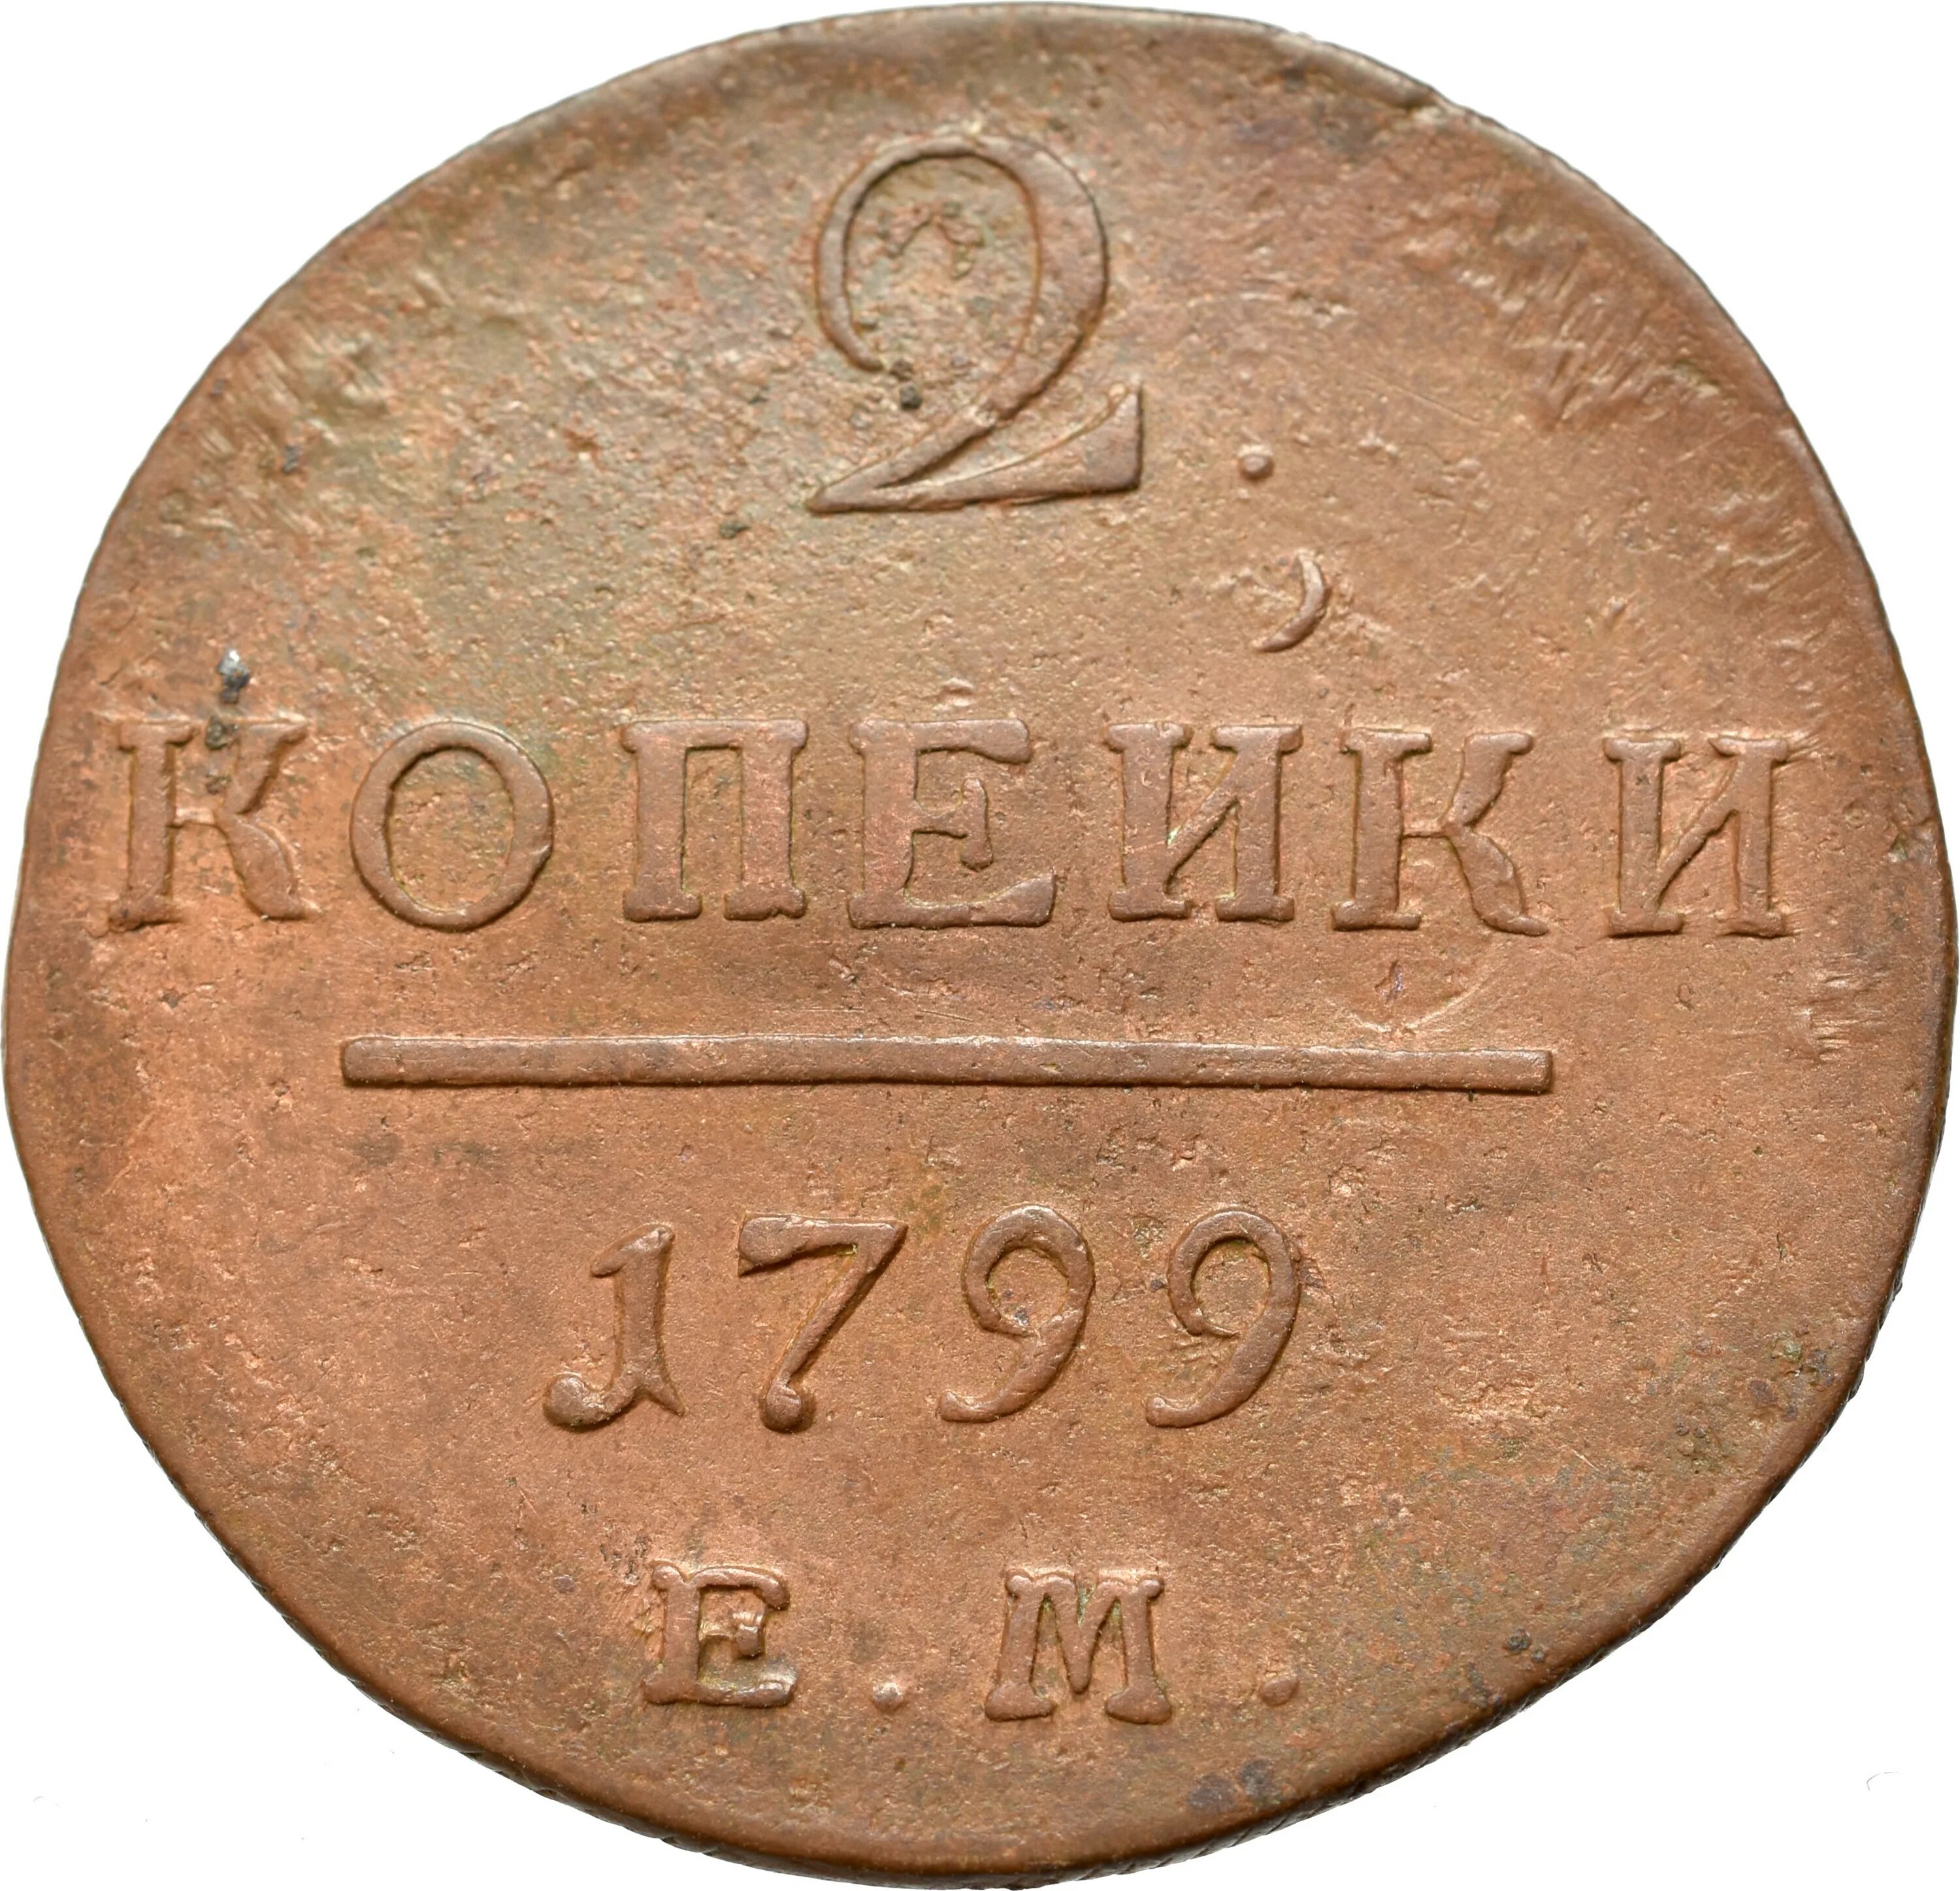 Копейка Петра 1 1798. Монета России 1 копейка 1798 года. Монеты 1800.